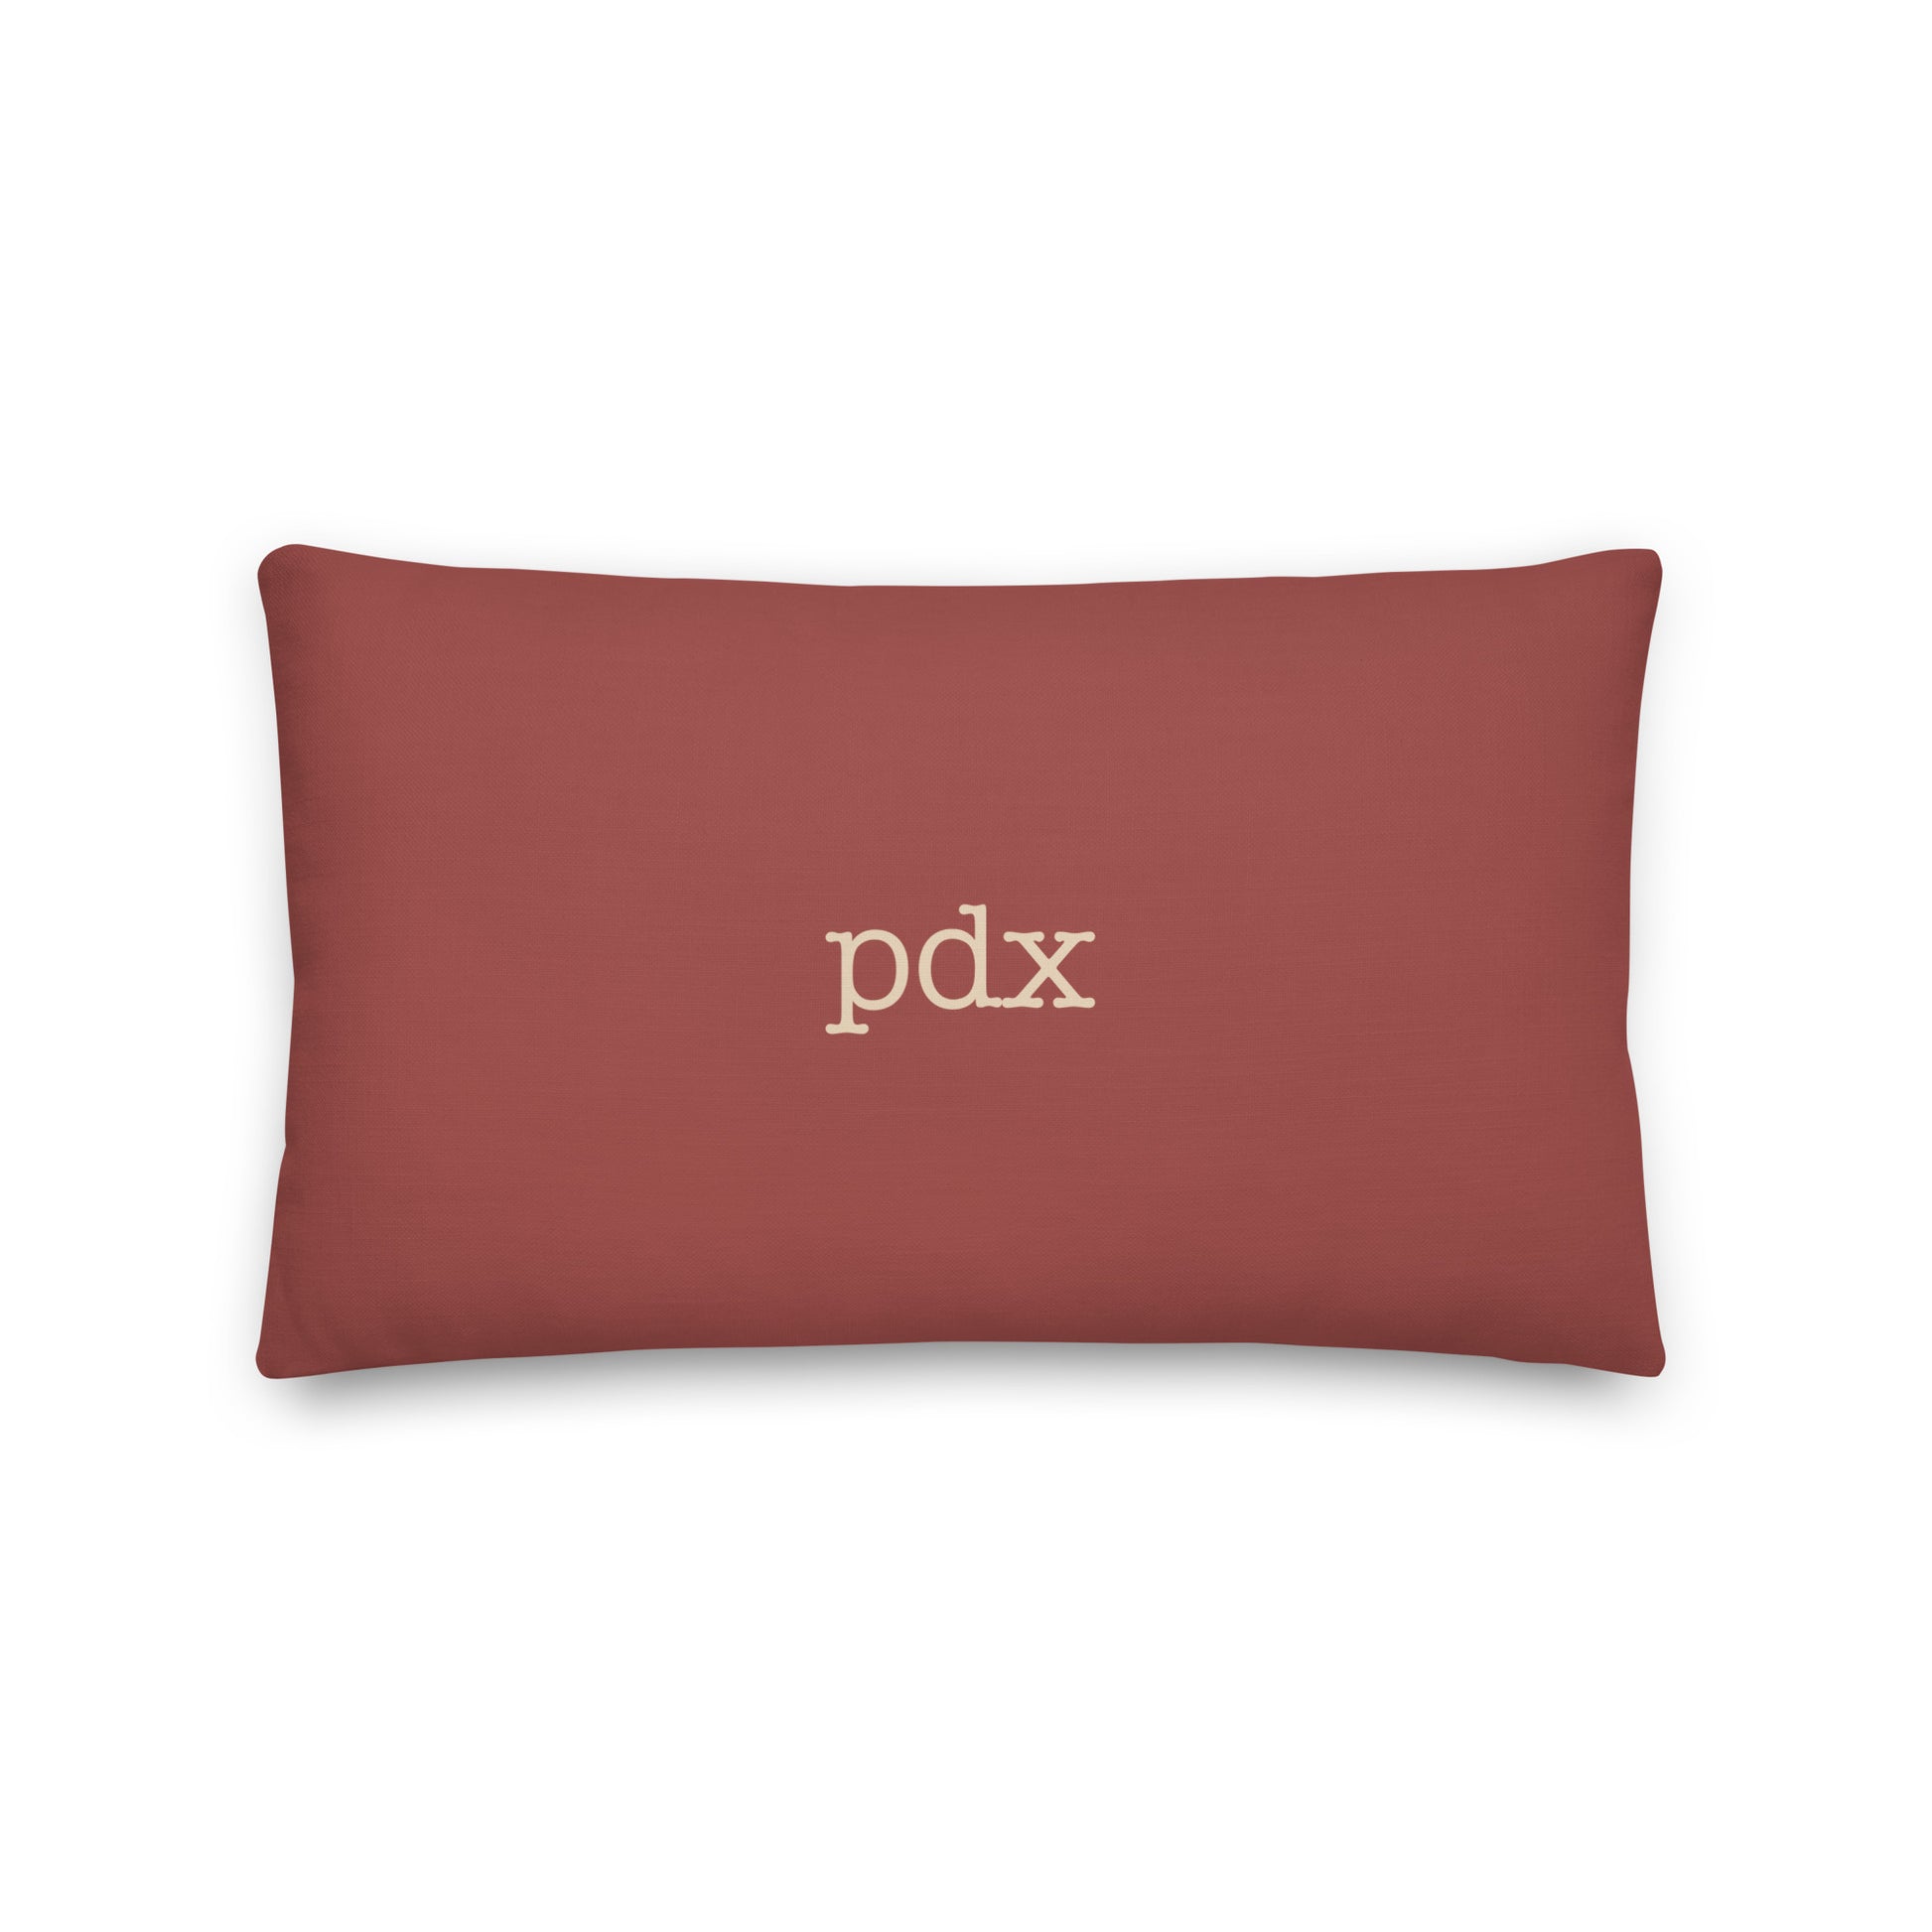 Typewriter Pillow - Terra Cotta • PDX Portland • YHM Designs - Image 02